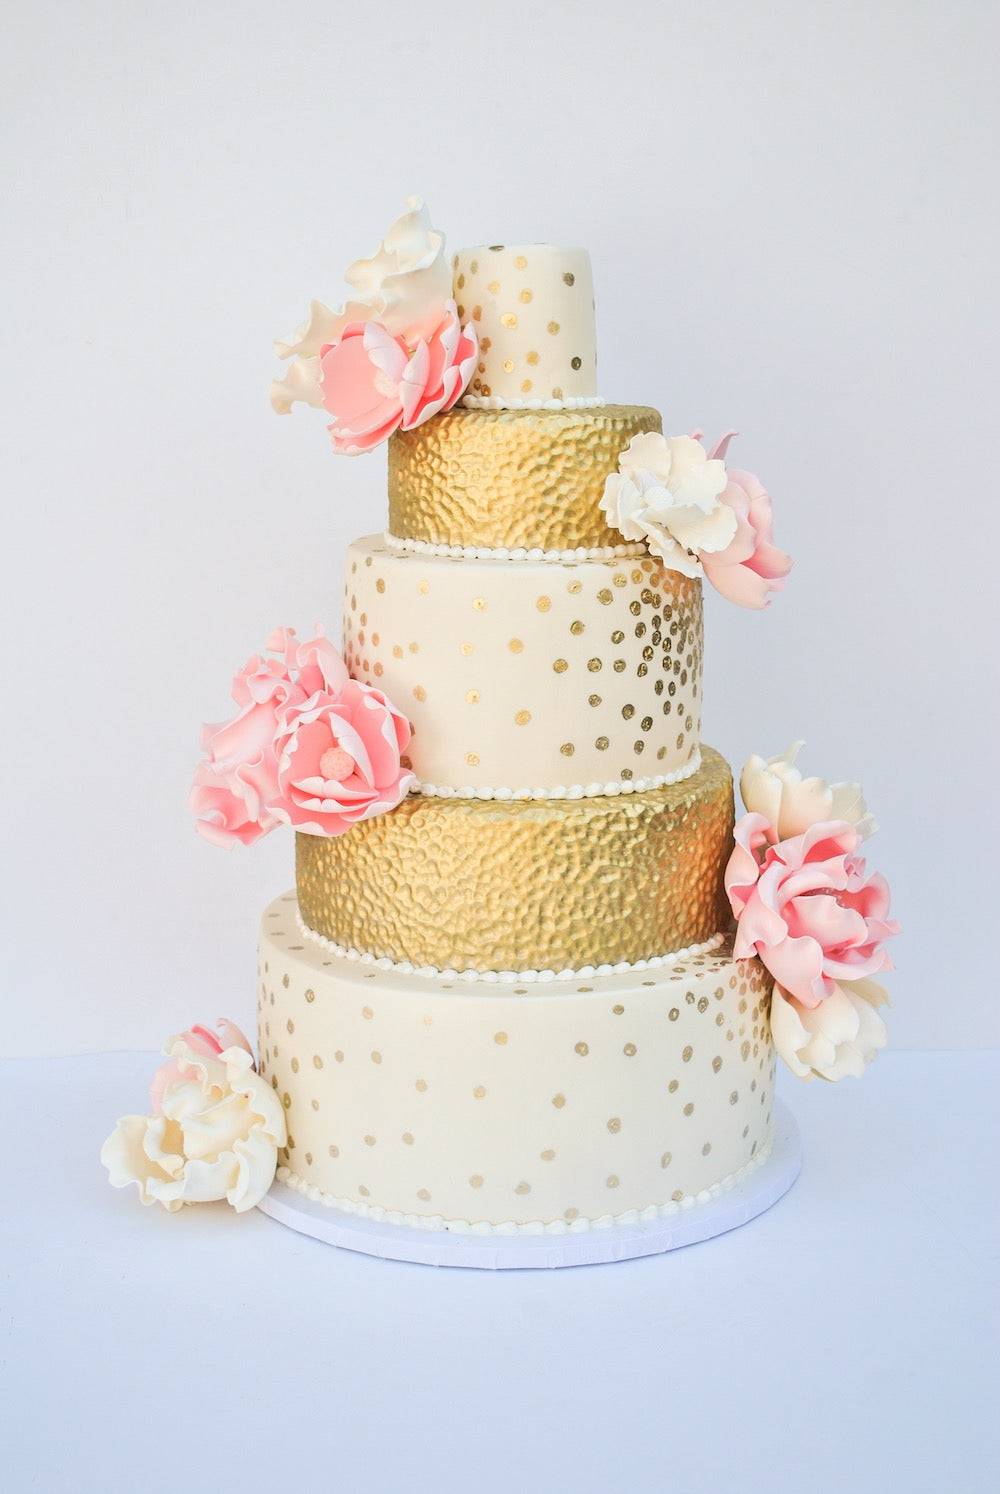 White & Gold Flowers Cake - Sweet E's Bake Shop